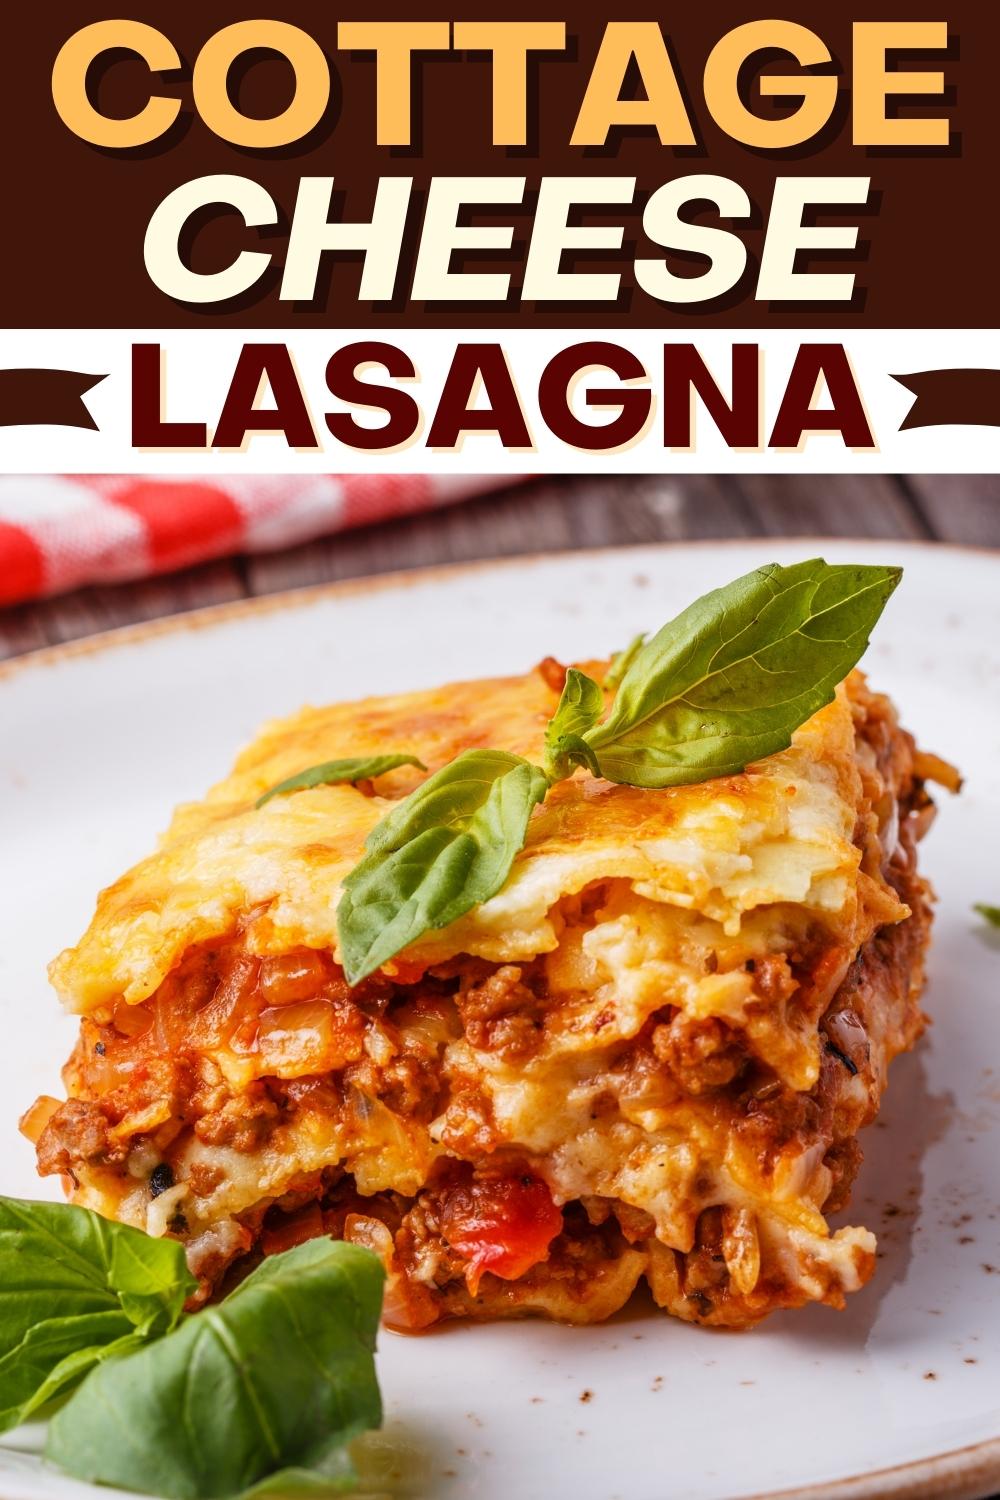 कॉटेज चीज lasagna